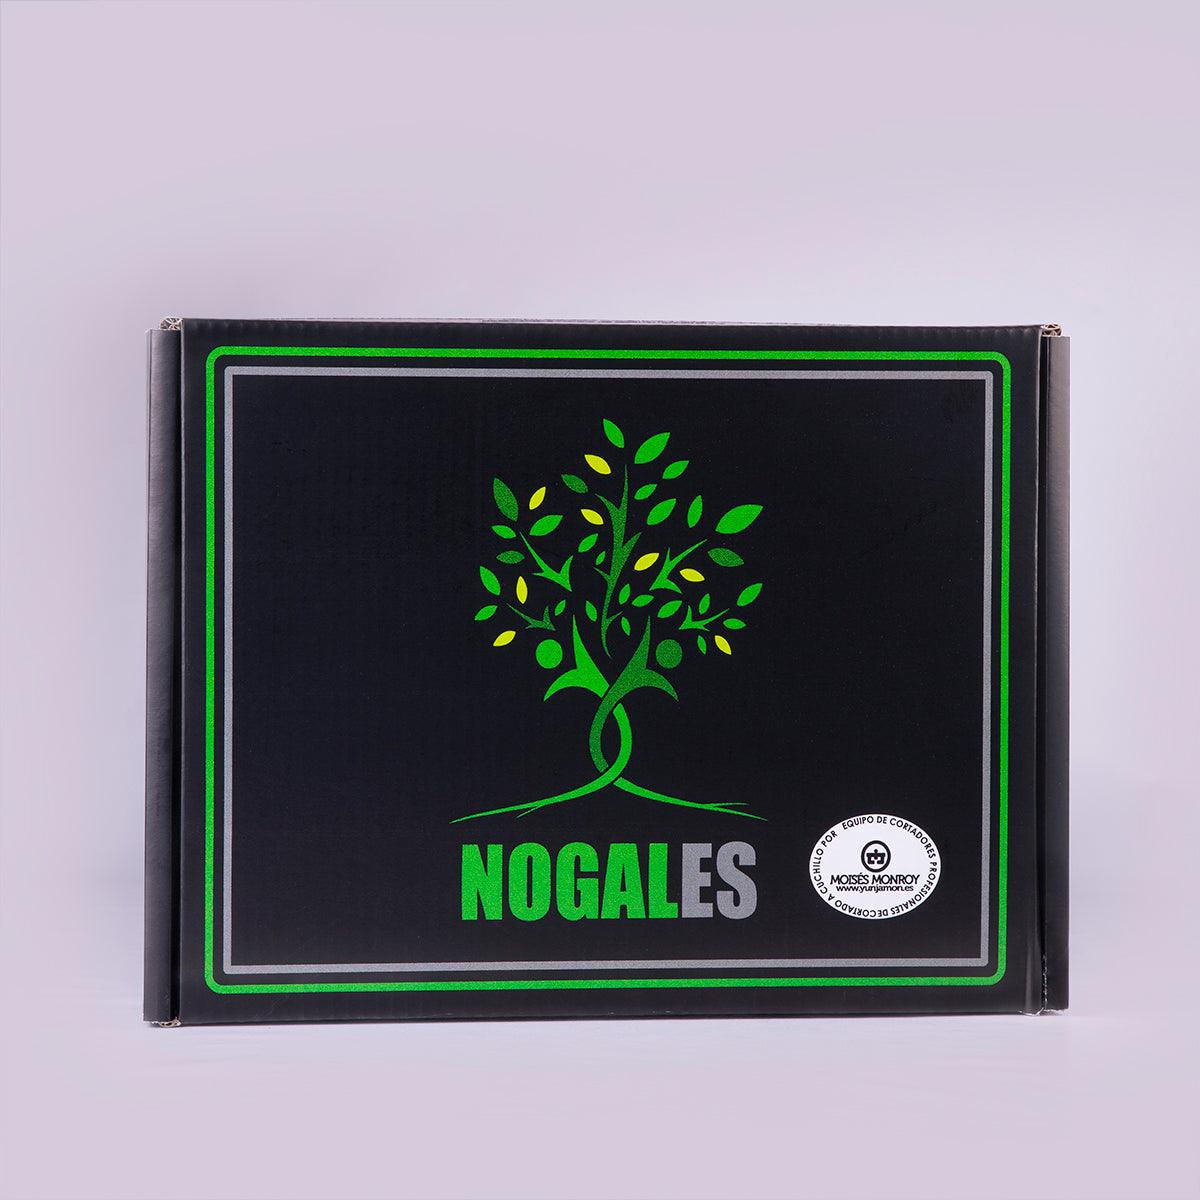 caja negra con logotipo Nogales para enviar sobres de paleta de cebo ibérica